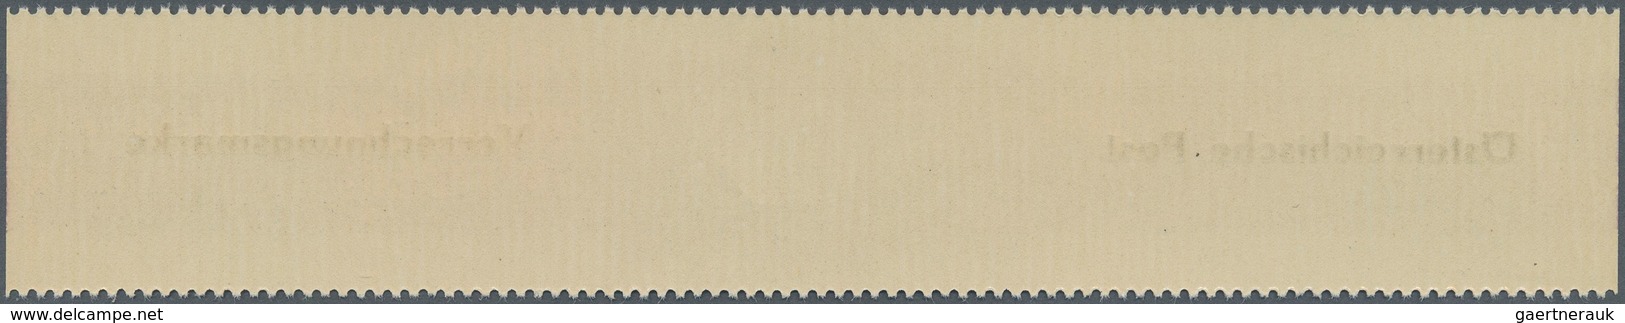 Österreich - Verrechnungsmarken: 1948, 100 Sch., 200 Sch. gez. 14½ und 300 Sch., alle drei Werte in